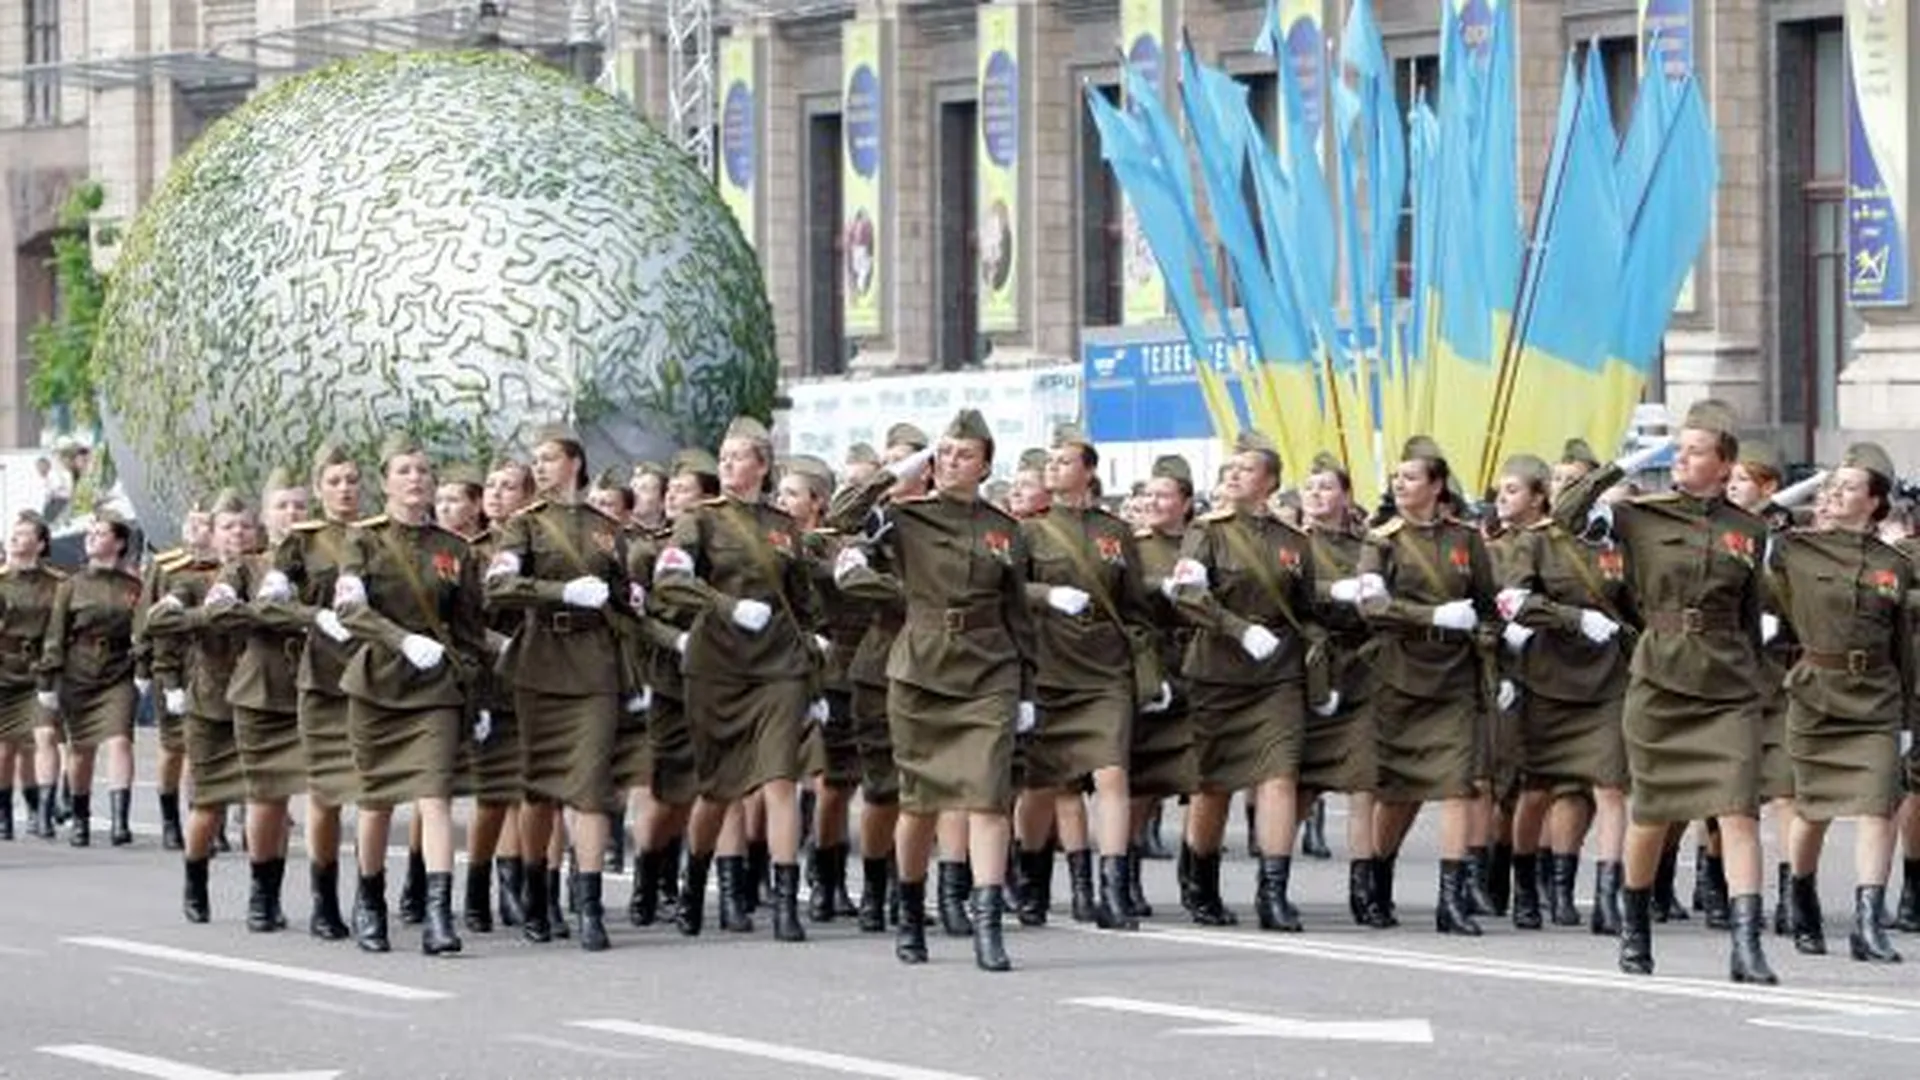 Участники военного парада в честь 65-й годовщины Победы в Великой Отечественной войне, который прошел на Крещатике, 2010 год